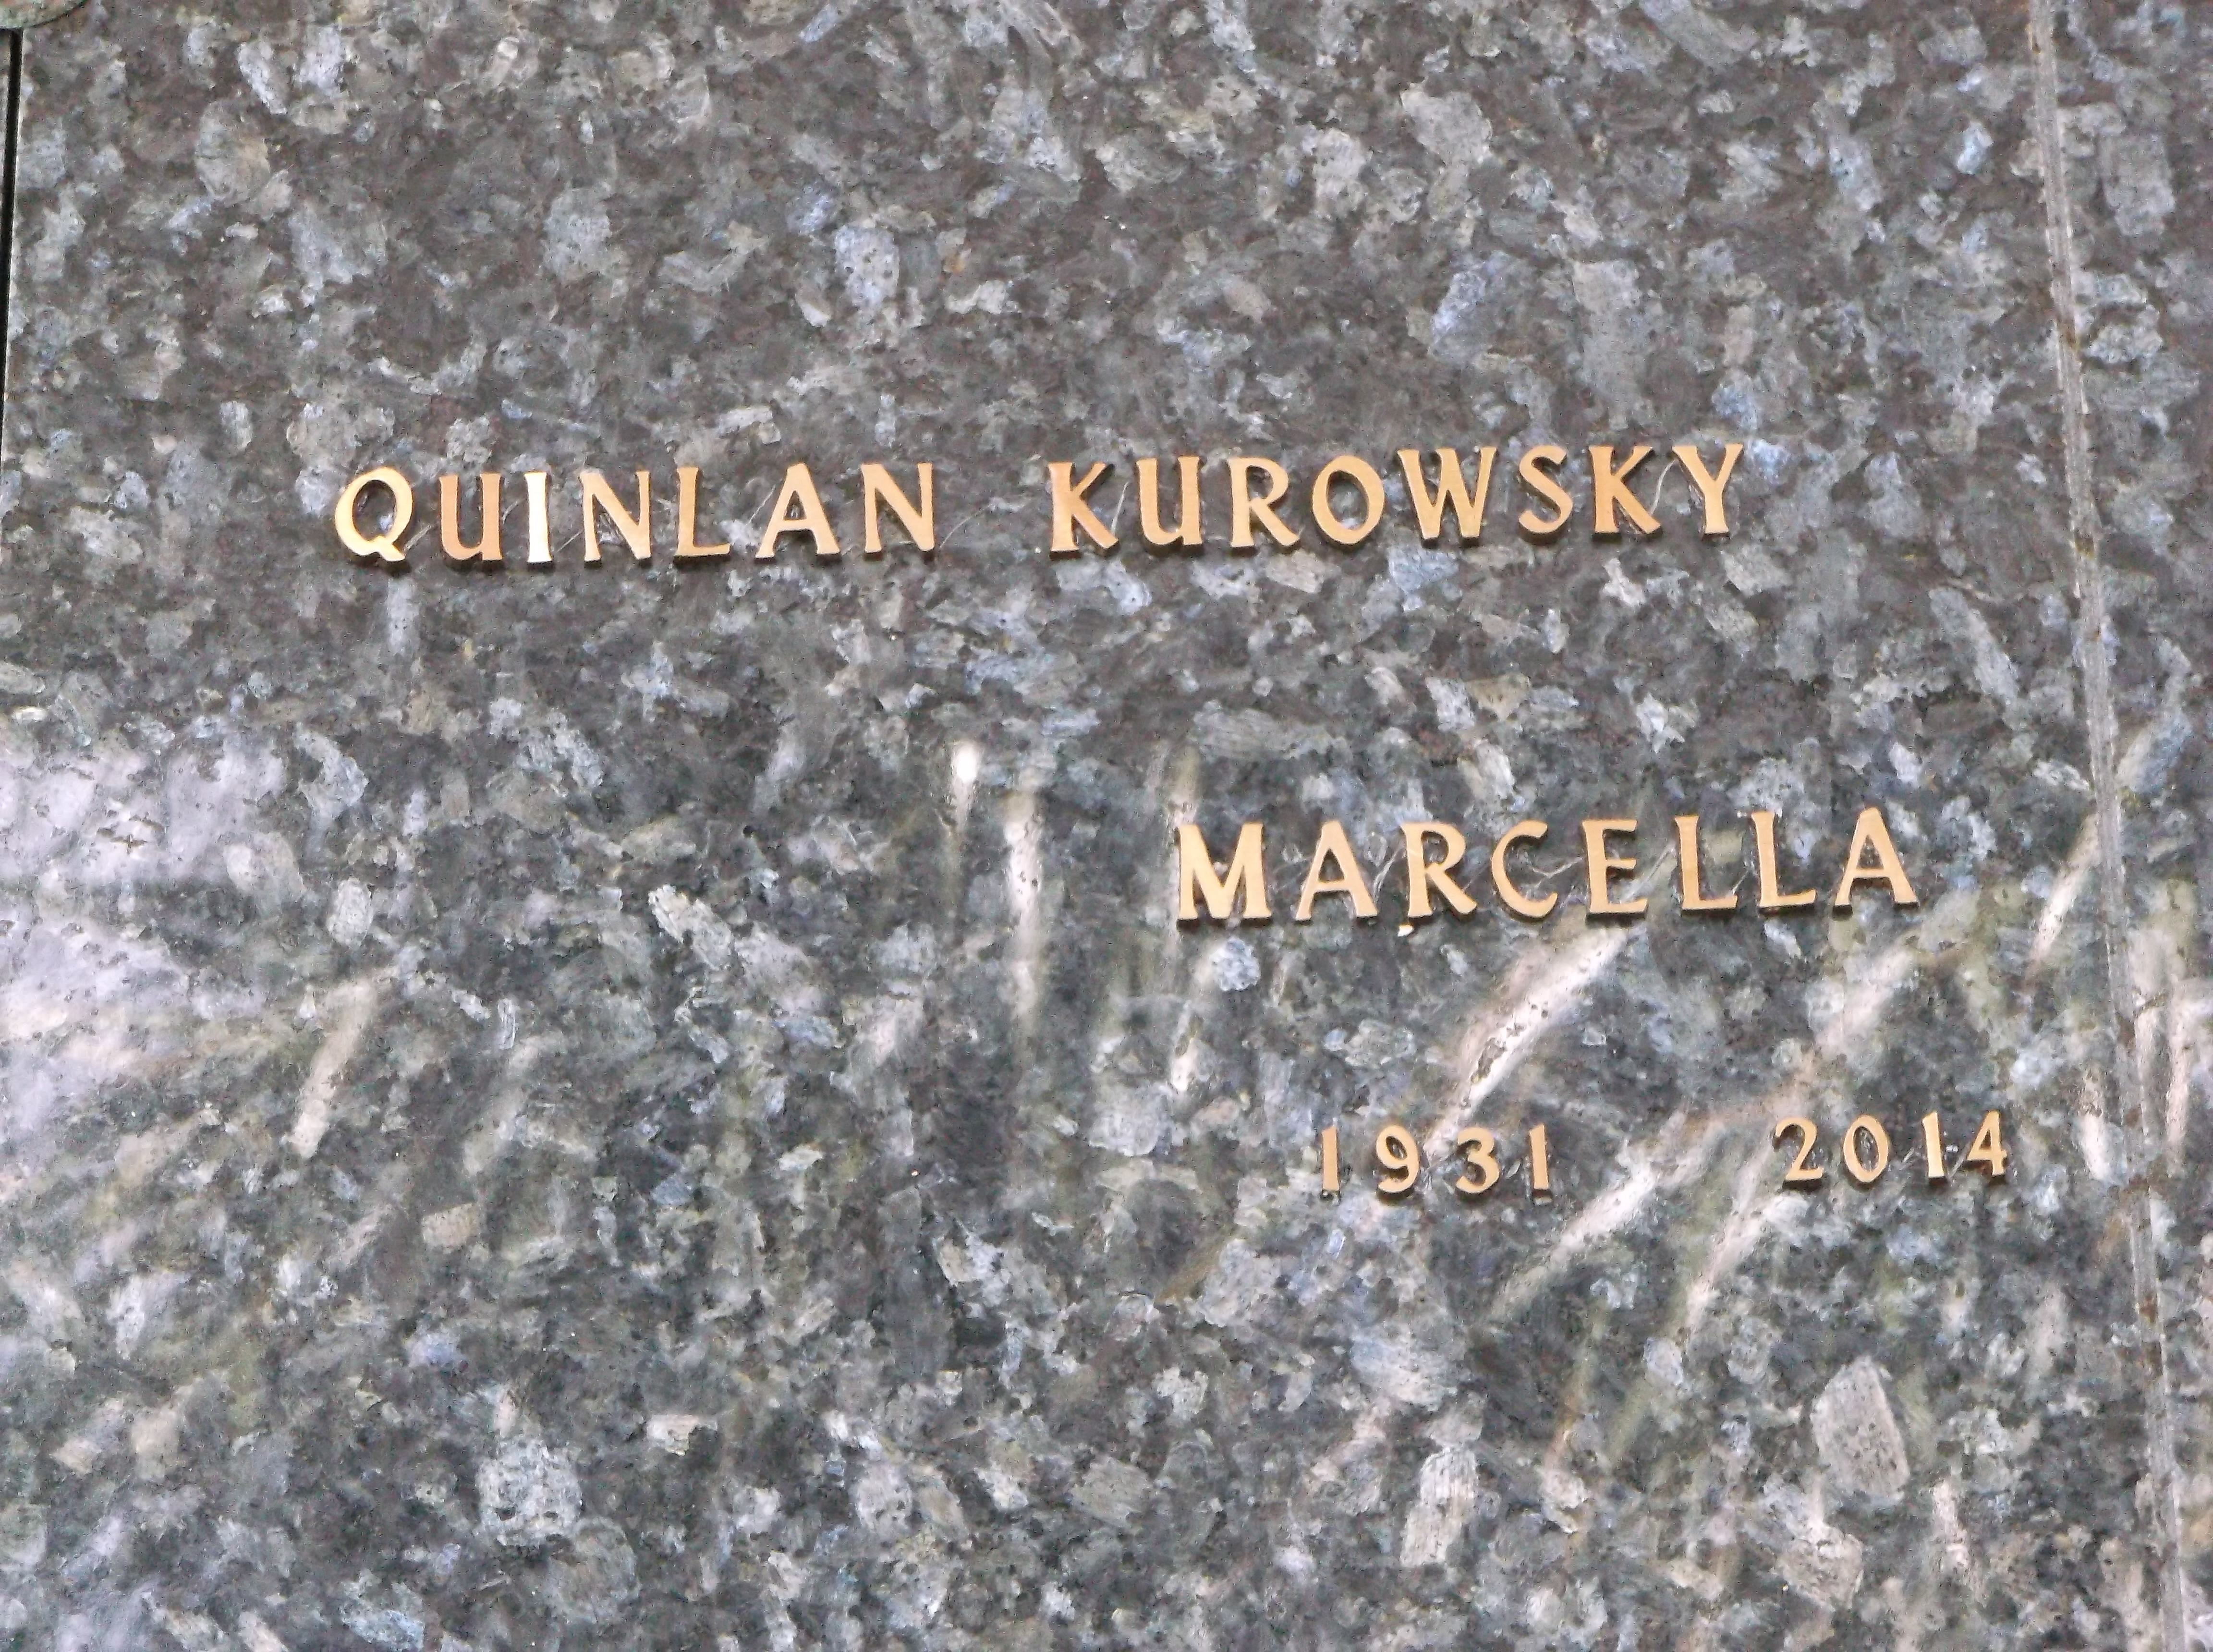 Marcella Quinlan Kurowsky